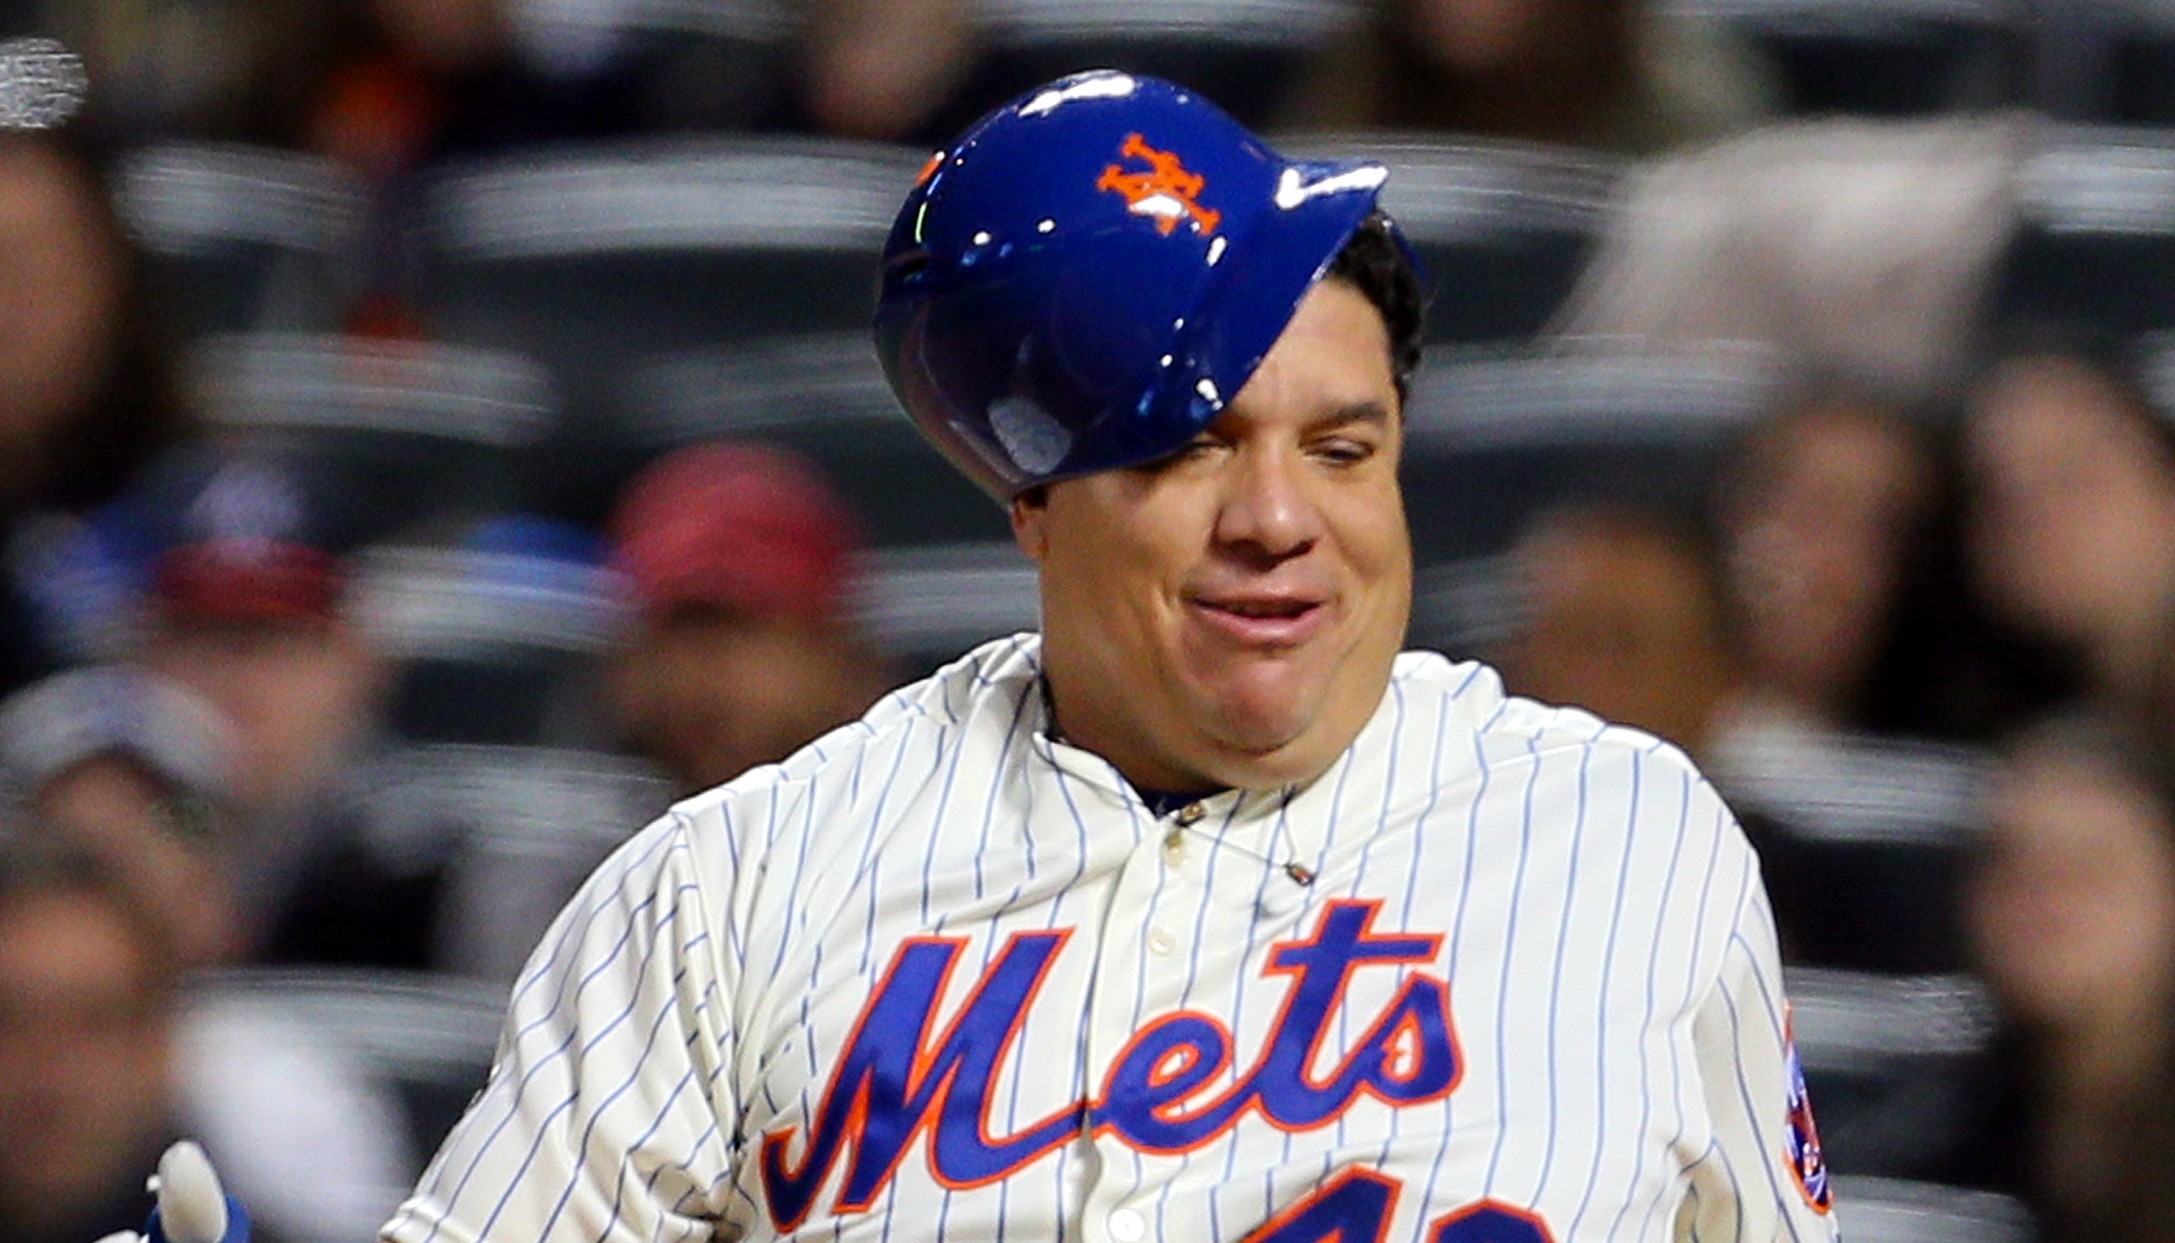 Bartolo Colon fat jokes prompt Mets to boycott reporter